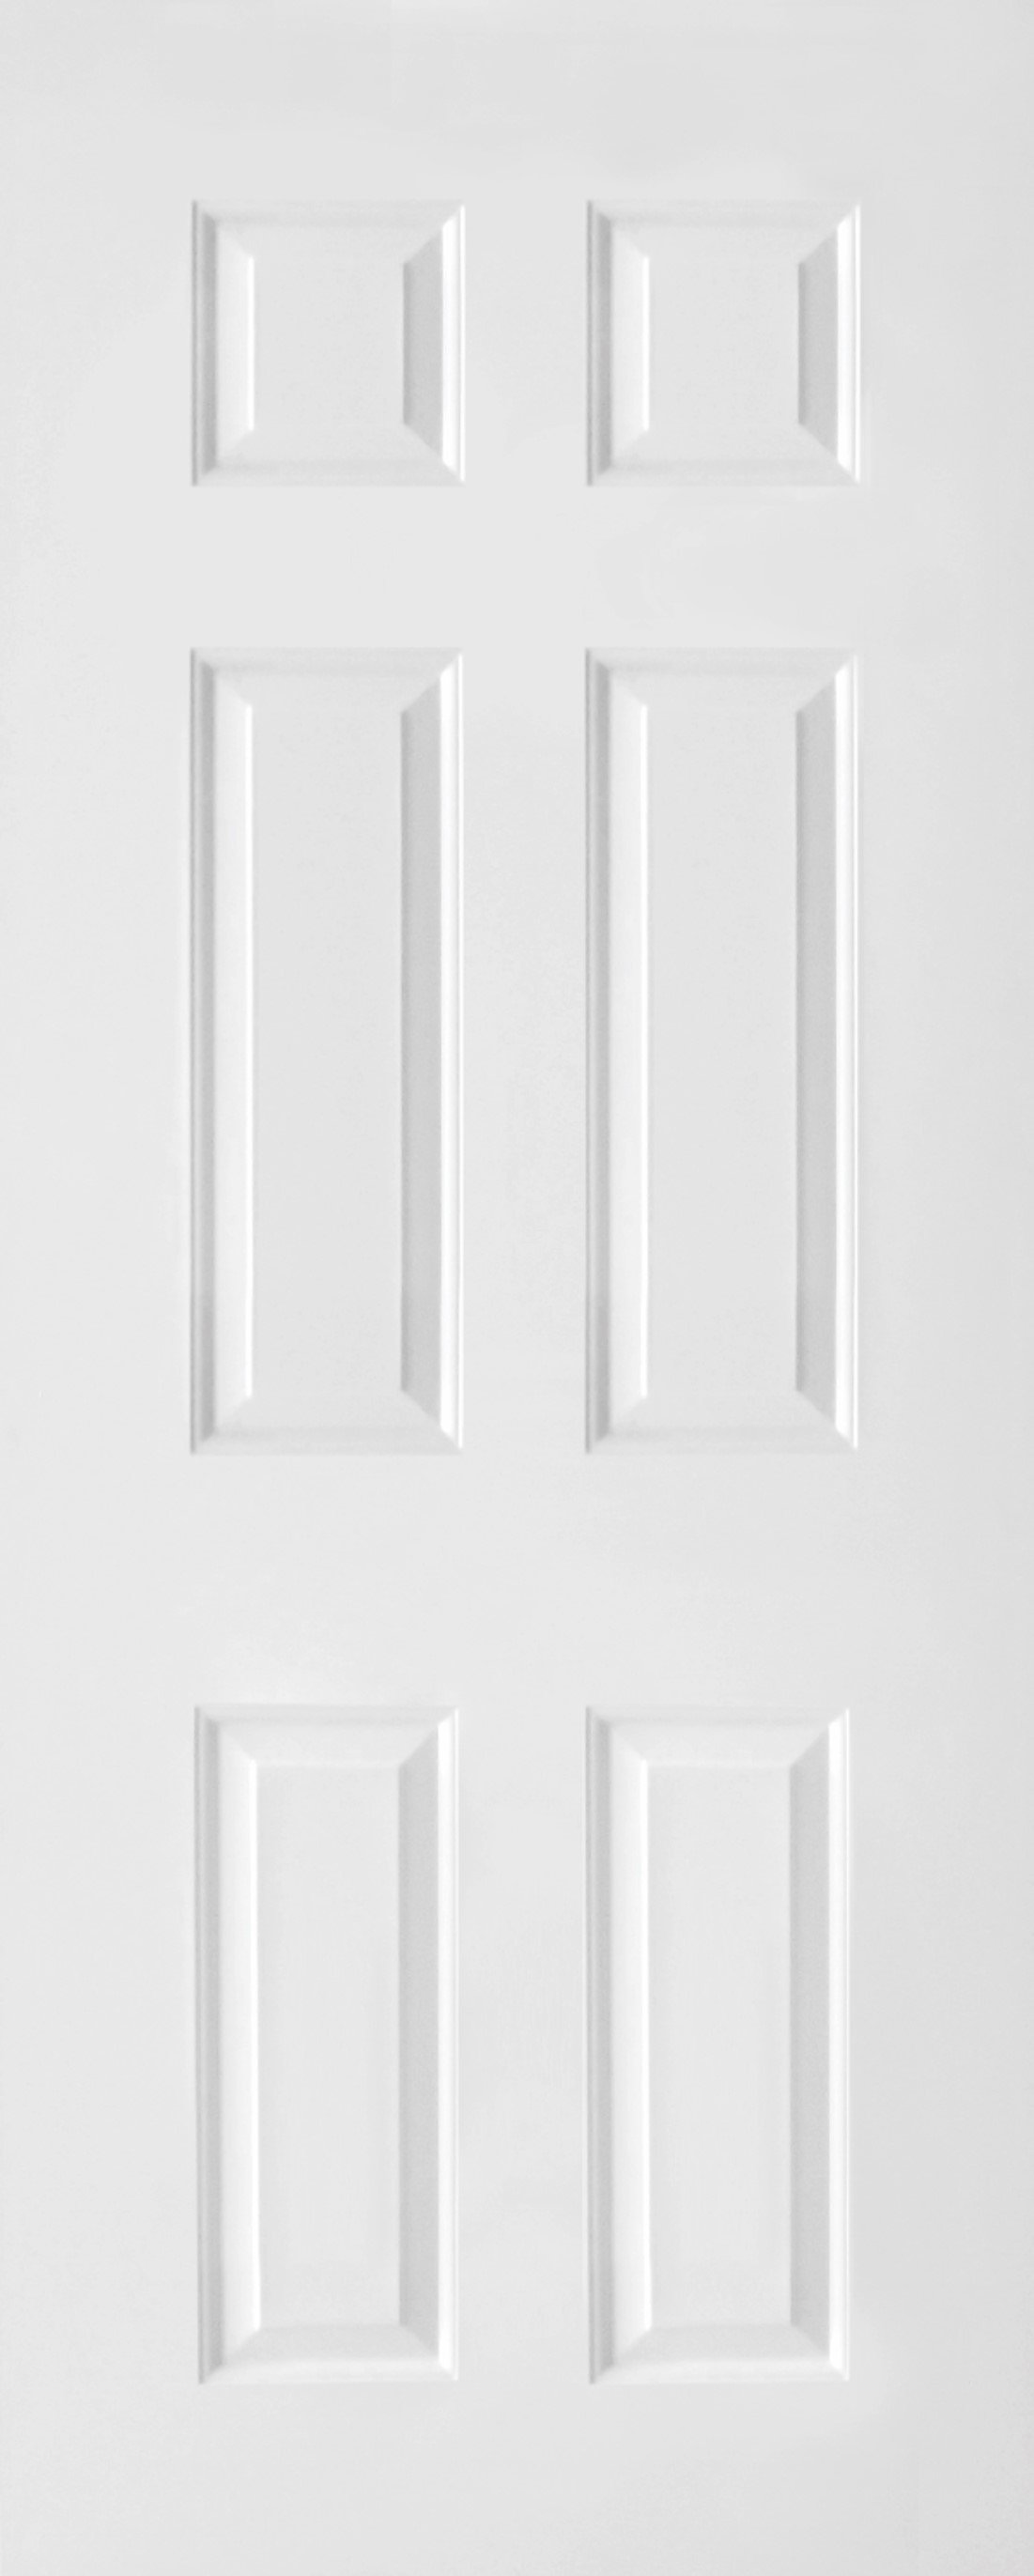 ประตูUPVC ผิวหน้าลายไม้ สีขาว บานลูกฟัก 6 ช่องตรง